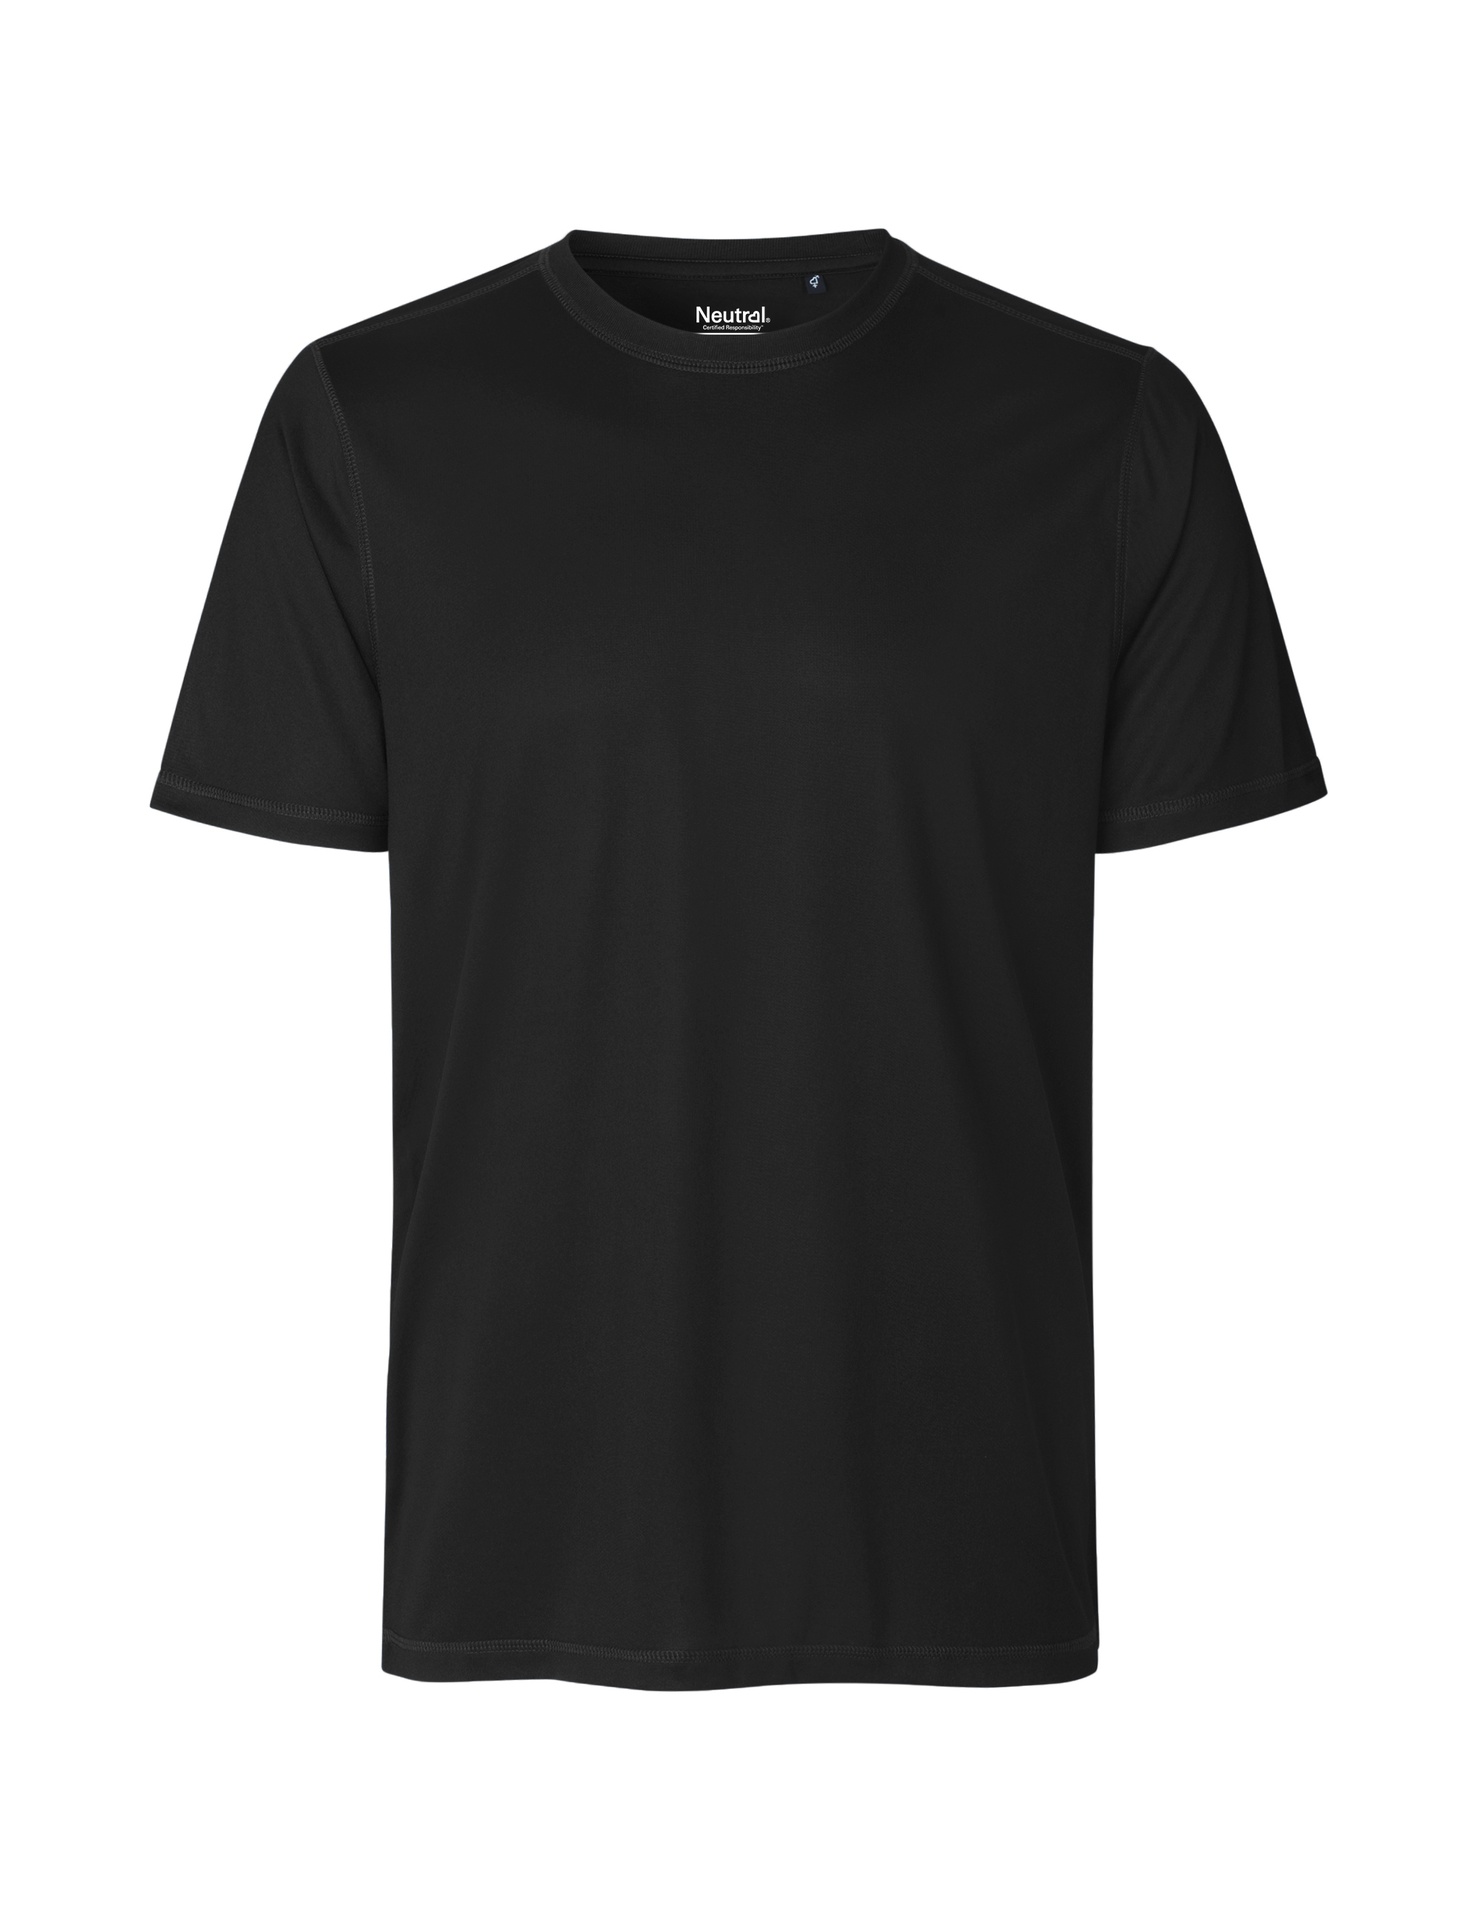 [PR/03758] Recycled Performance T-Shirt (Black 03, 2XL)